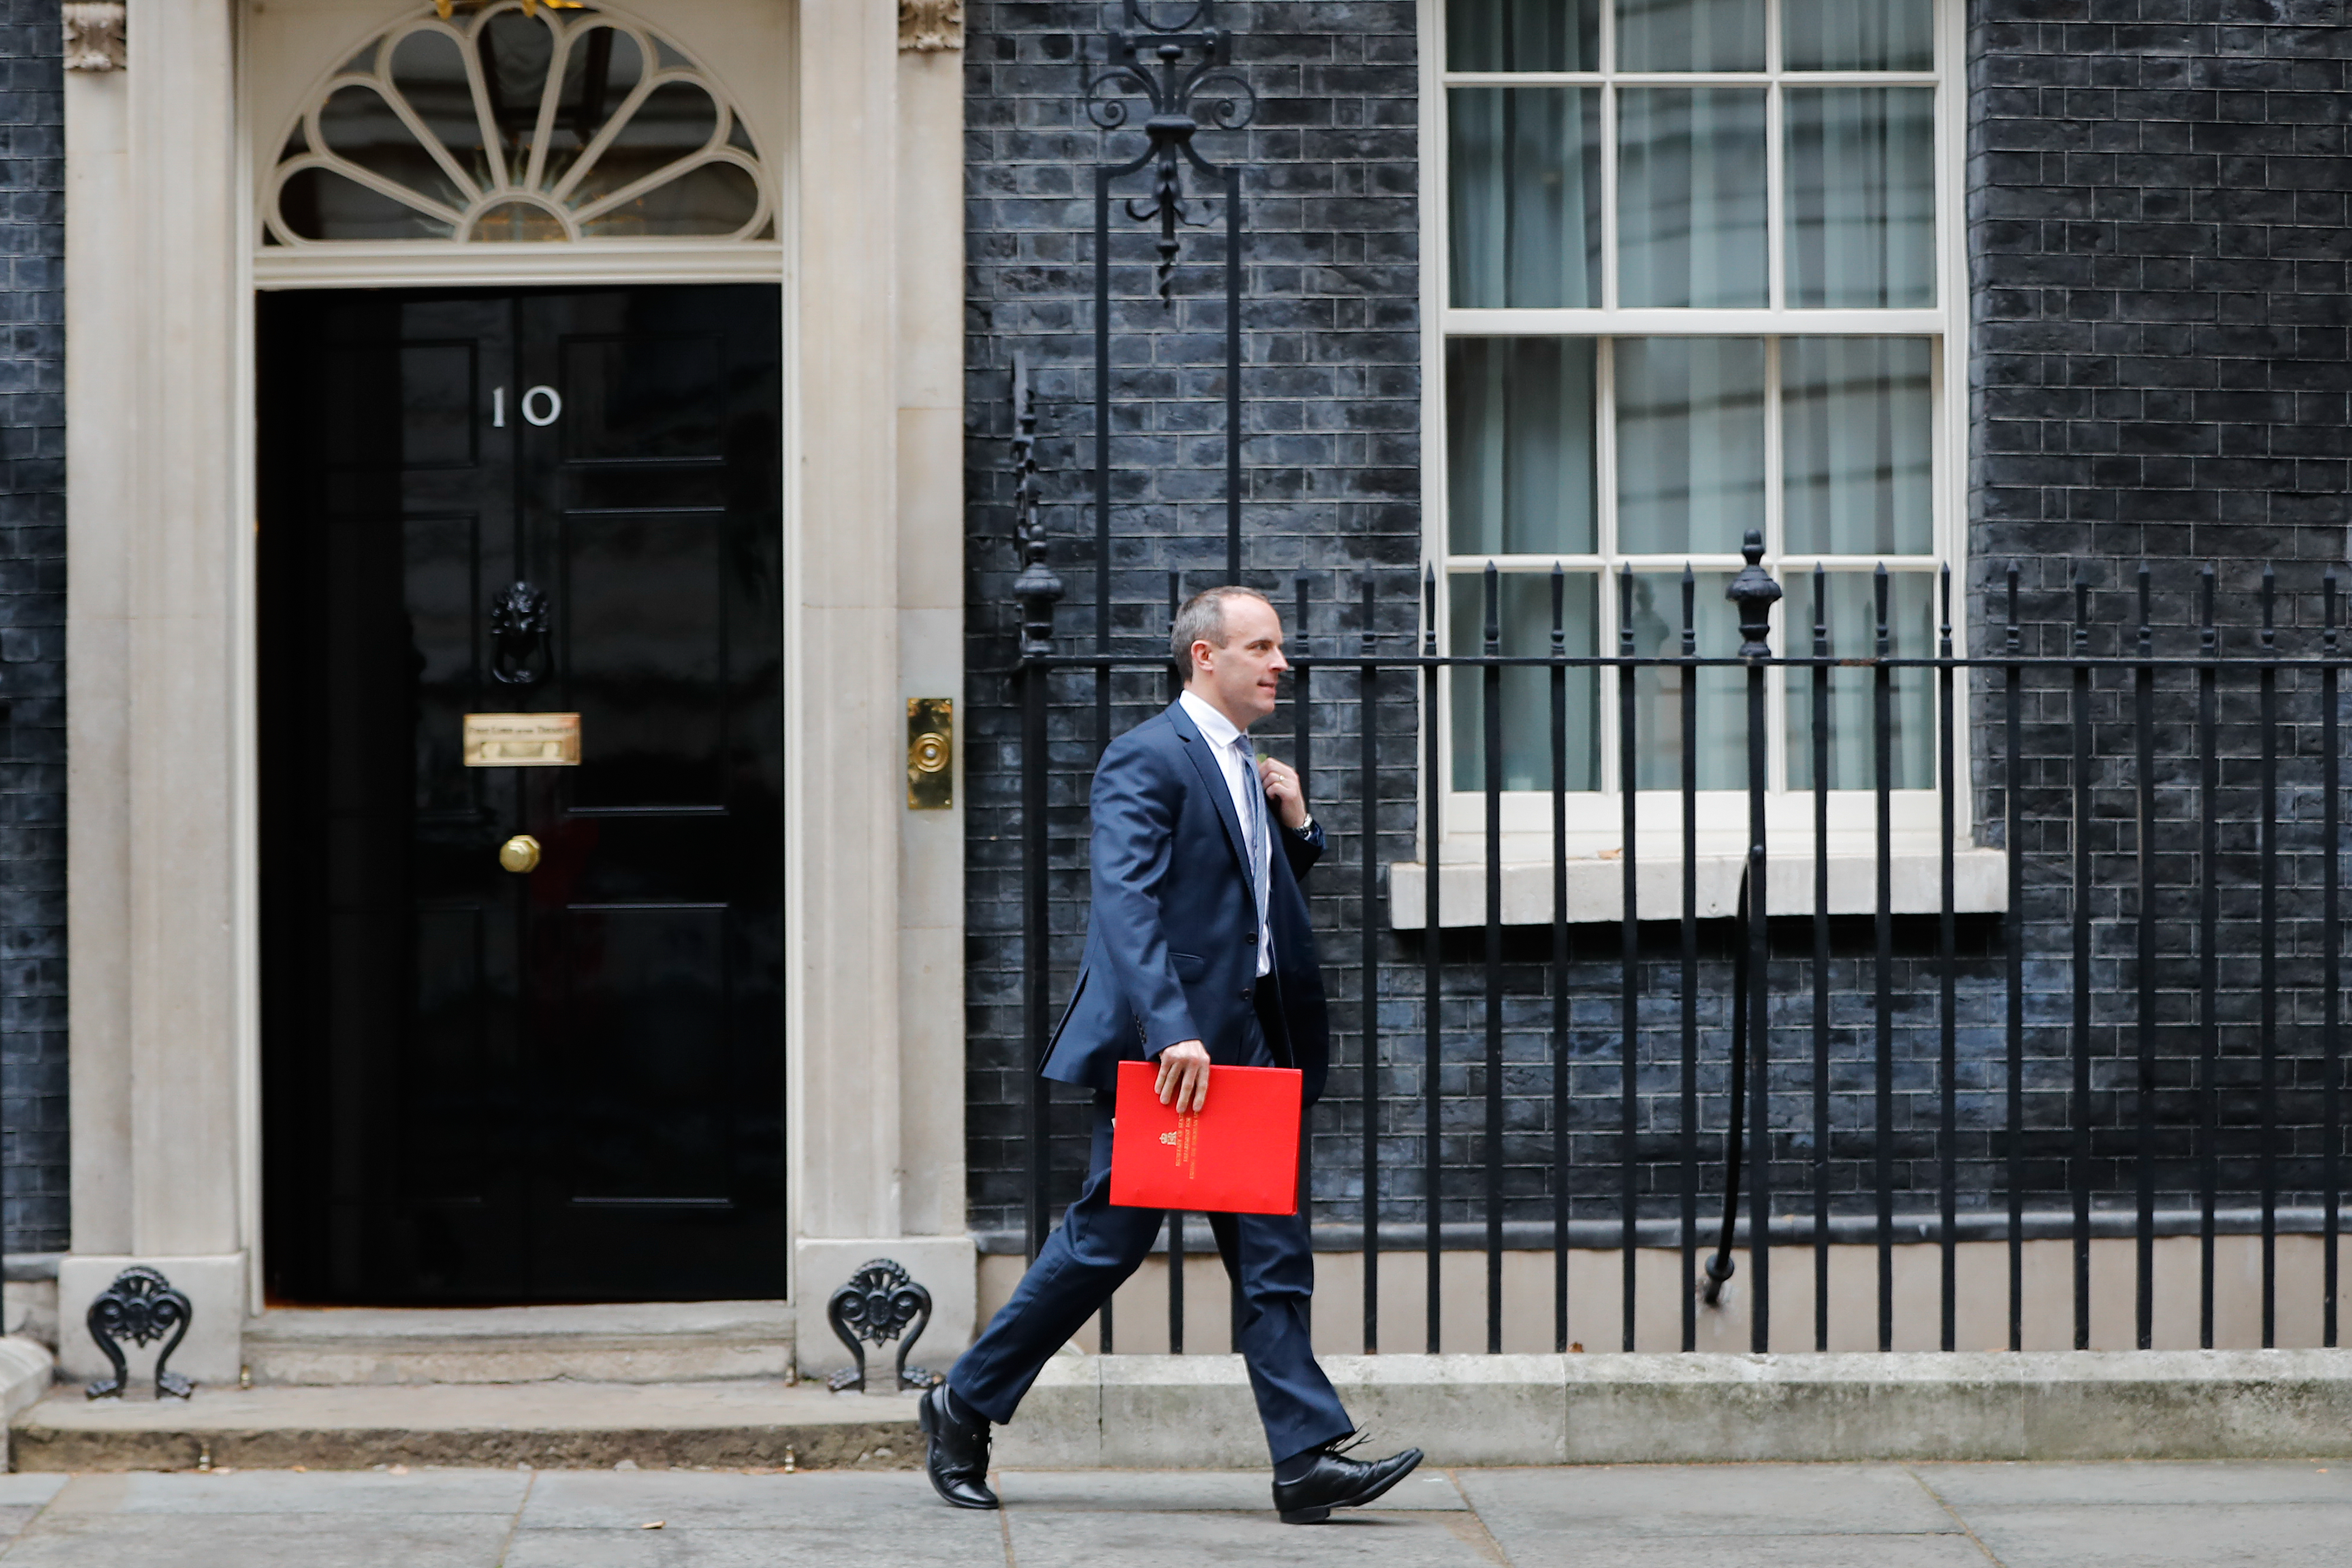 Dominic Raab a brit miniszterelnök hivatala, a Downing Street 10 előtt.